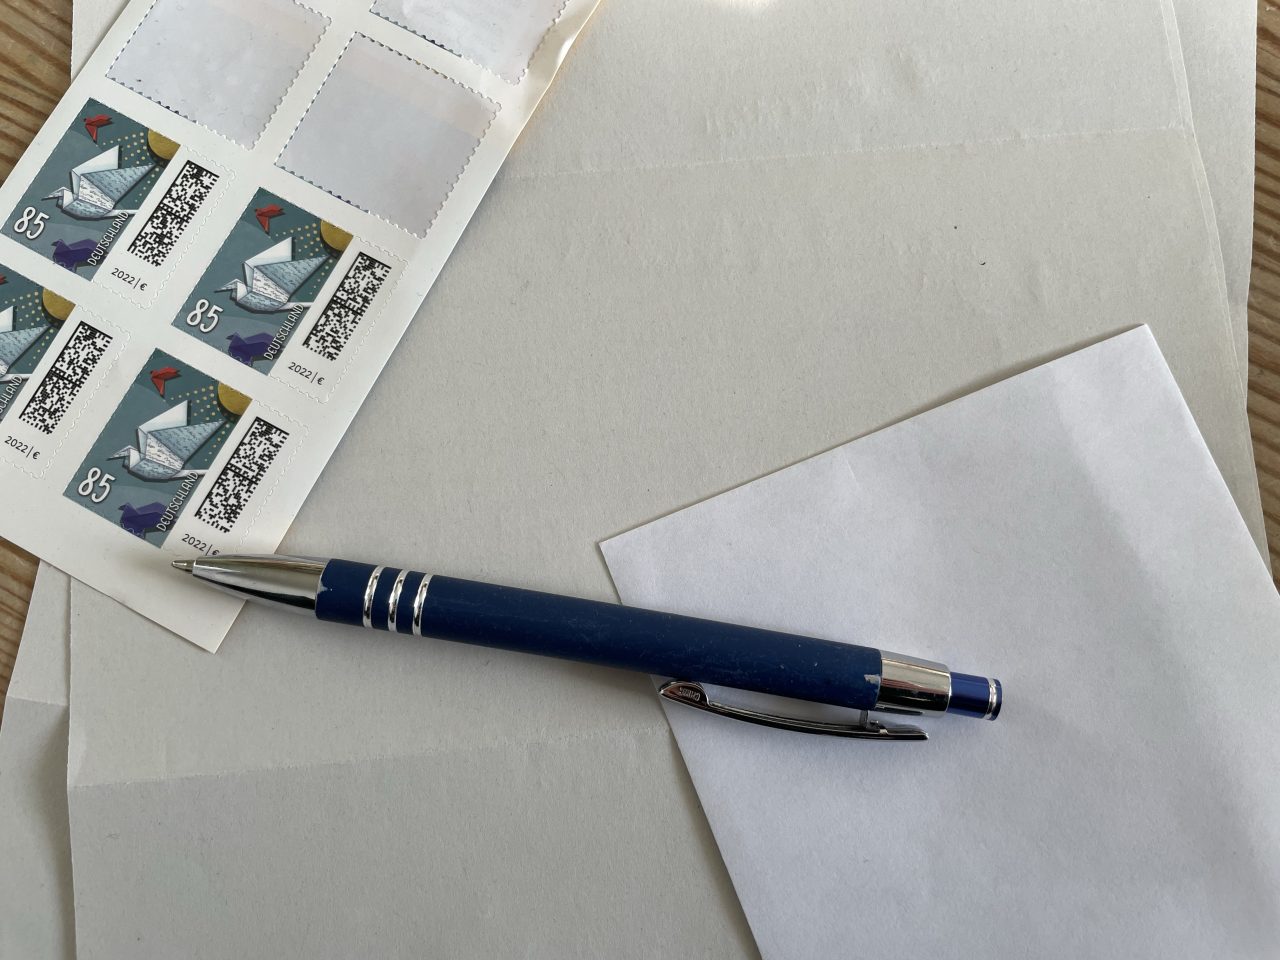 Briefmarken, Papier, Stift, Umschlag auf einem Tisch